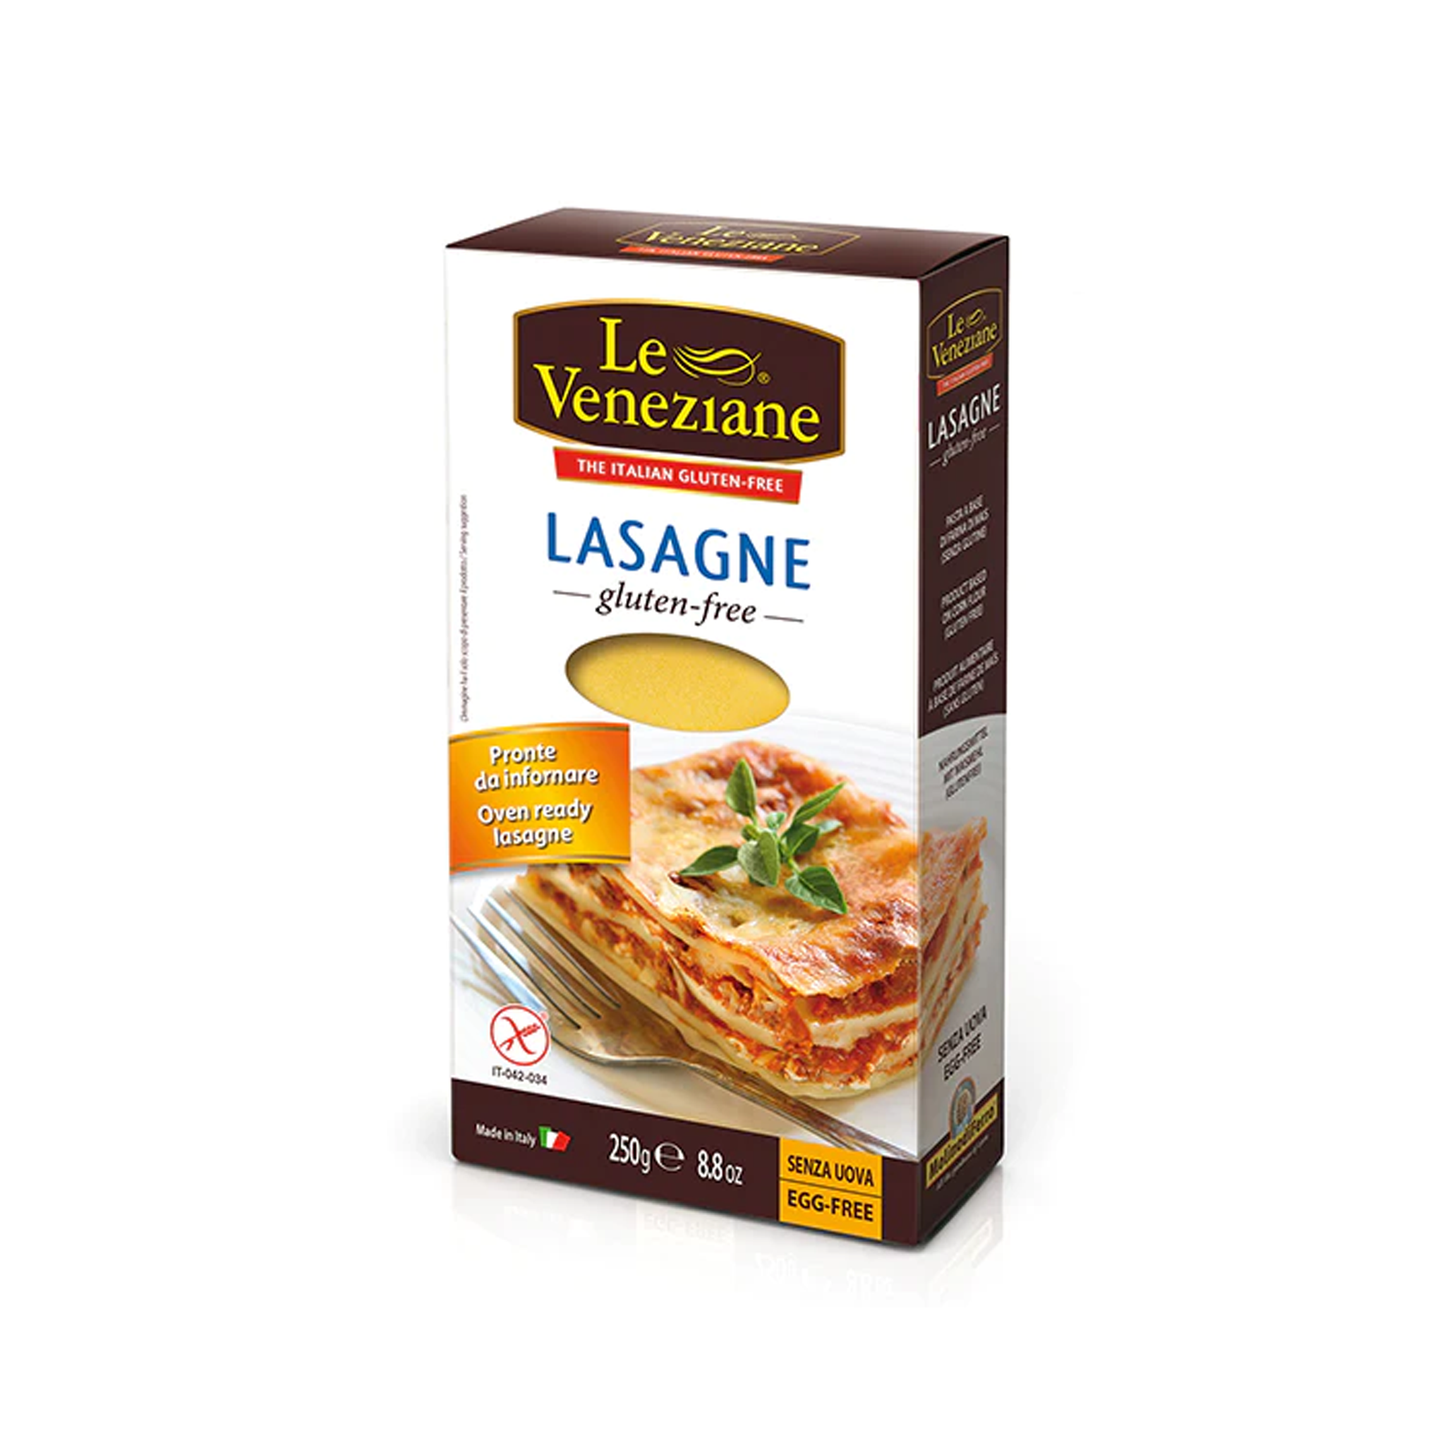 Le Veneziane Gluten Free Lasagna Pasta